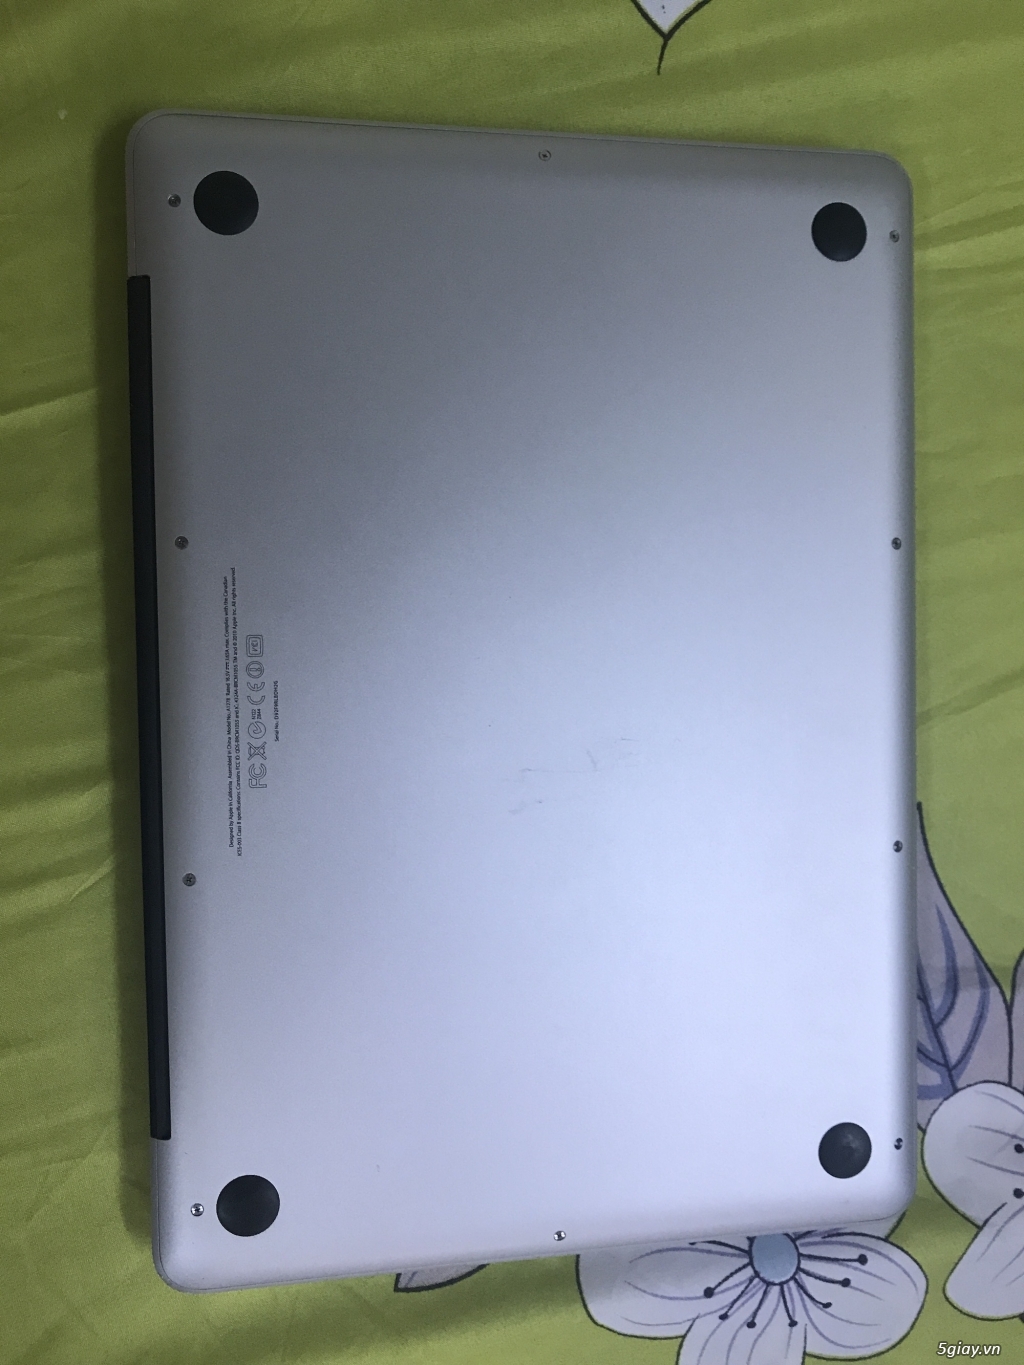 Bán Macbook Pro 2011 MC700 i5/4g/320g, đẹp long lanh - 4